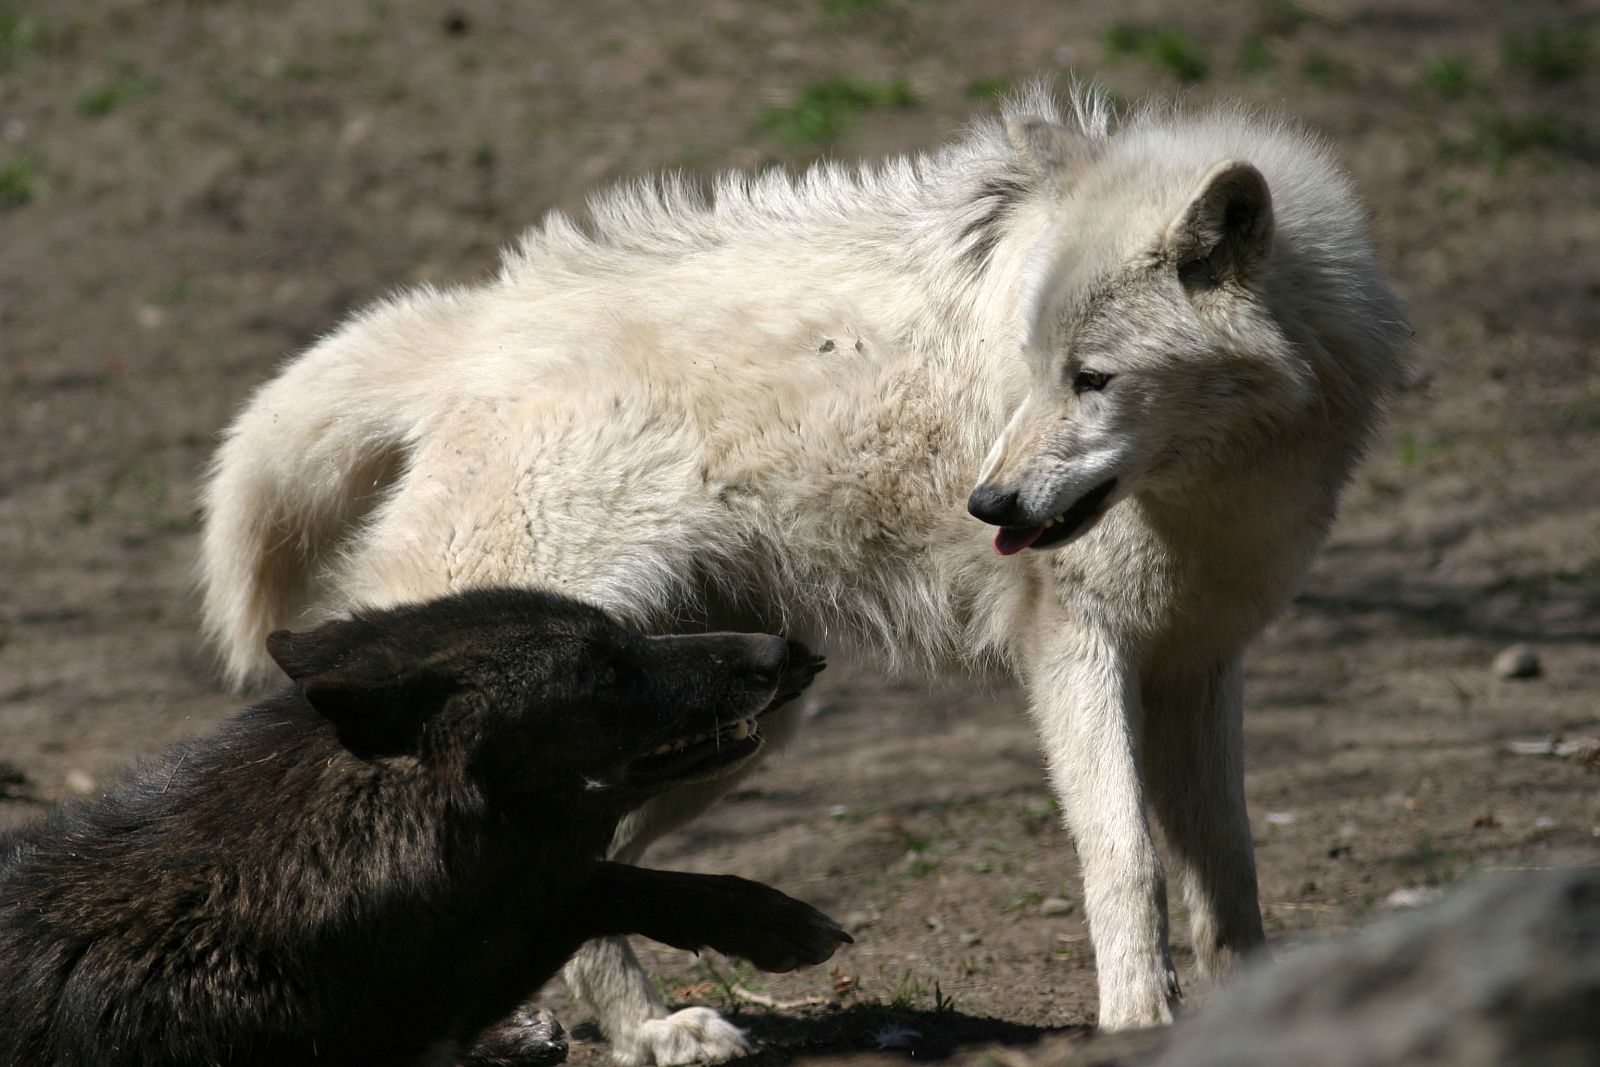 Los lobos negros dominan en los bosques de Norteamérica y los blancos son más numerosos en la tundra ártica.